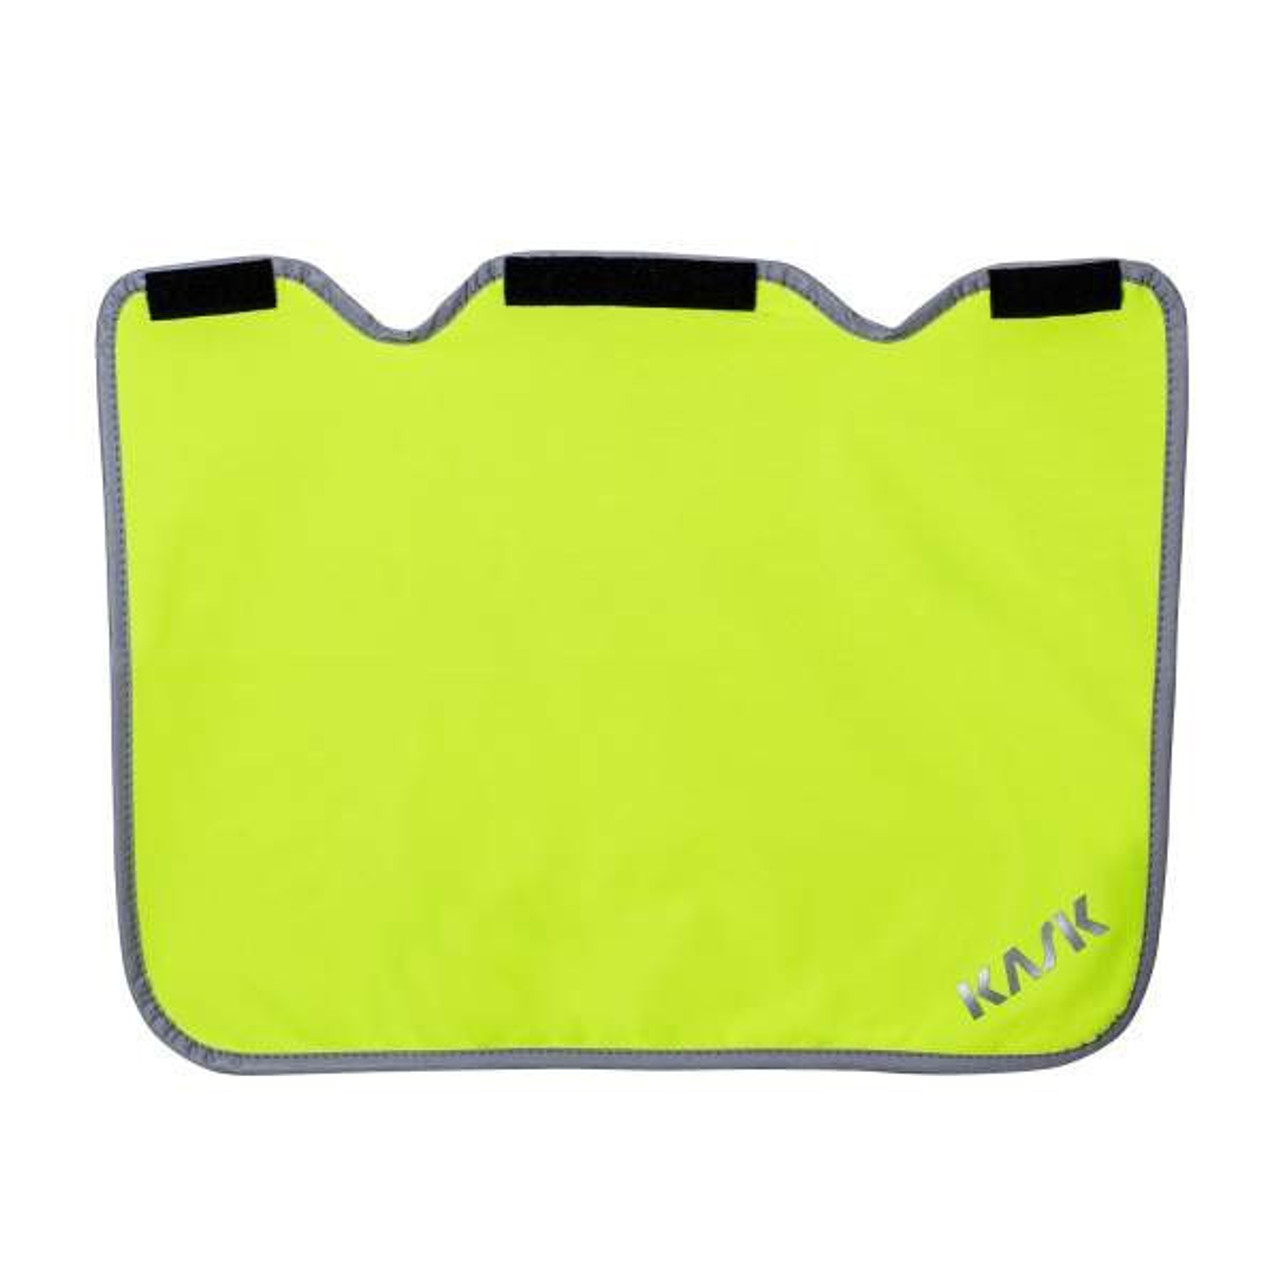 Kask Rain & Shield Yellow Fluorescent- Superplasma - WAC00033-221 - Jendco Safety